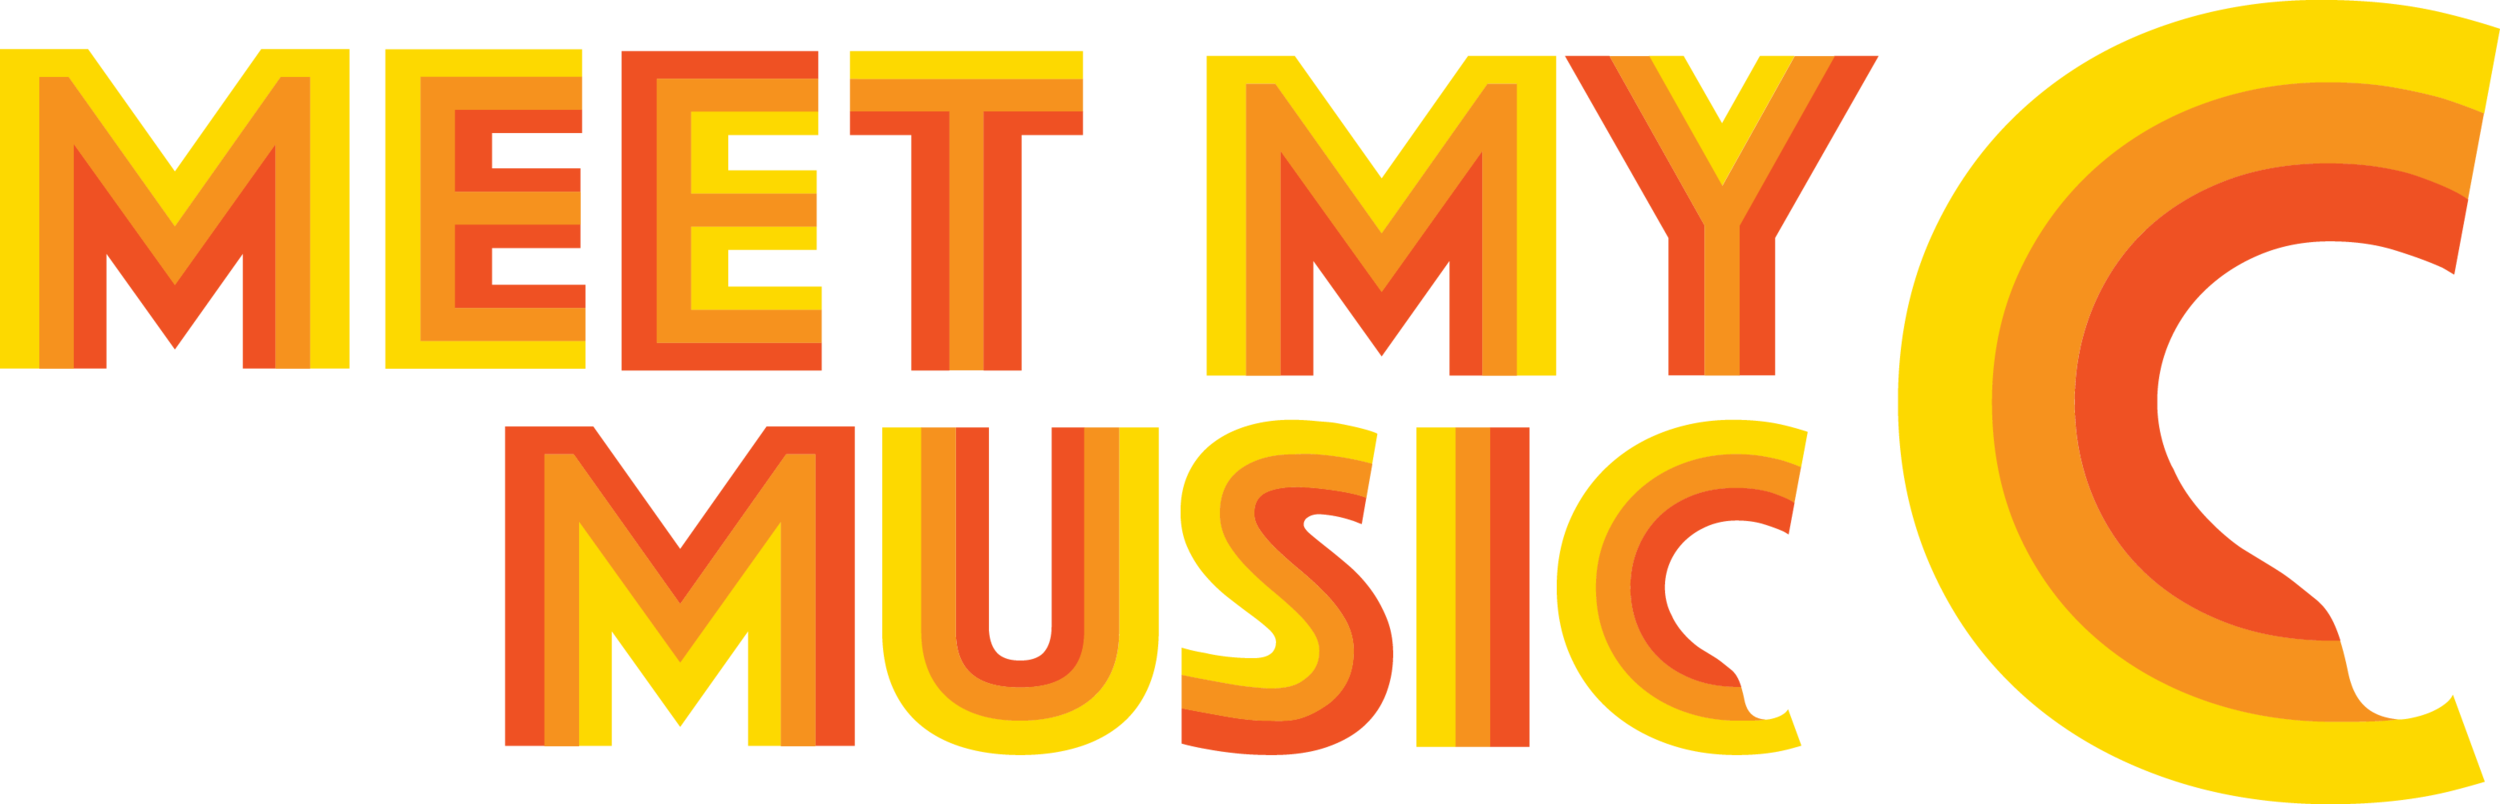 Meet my music